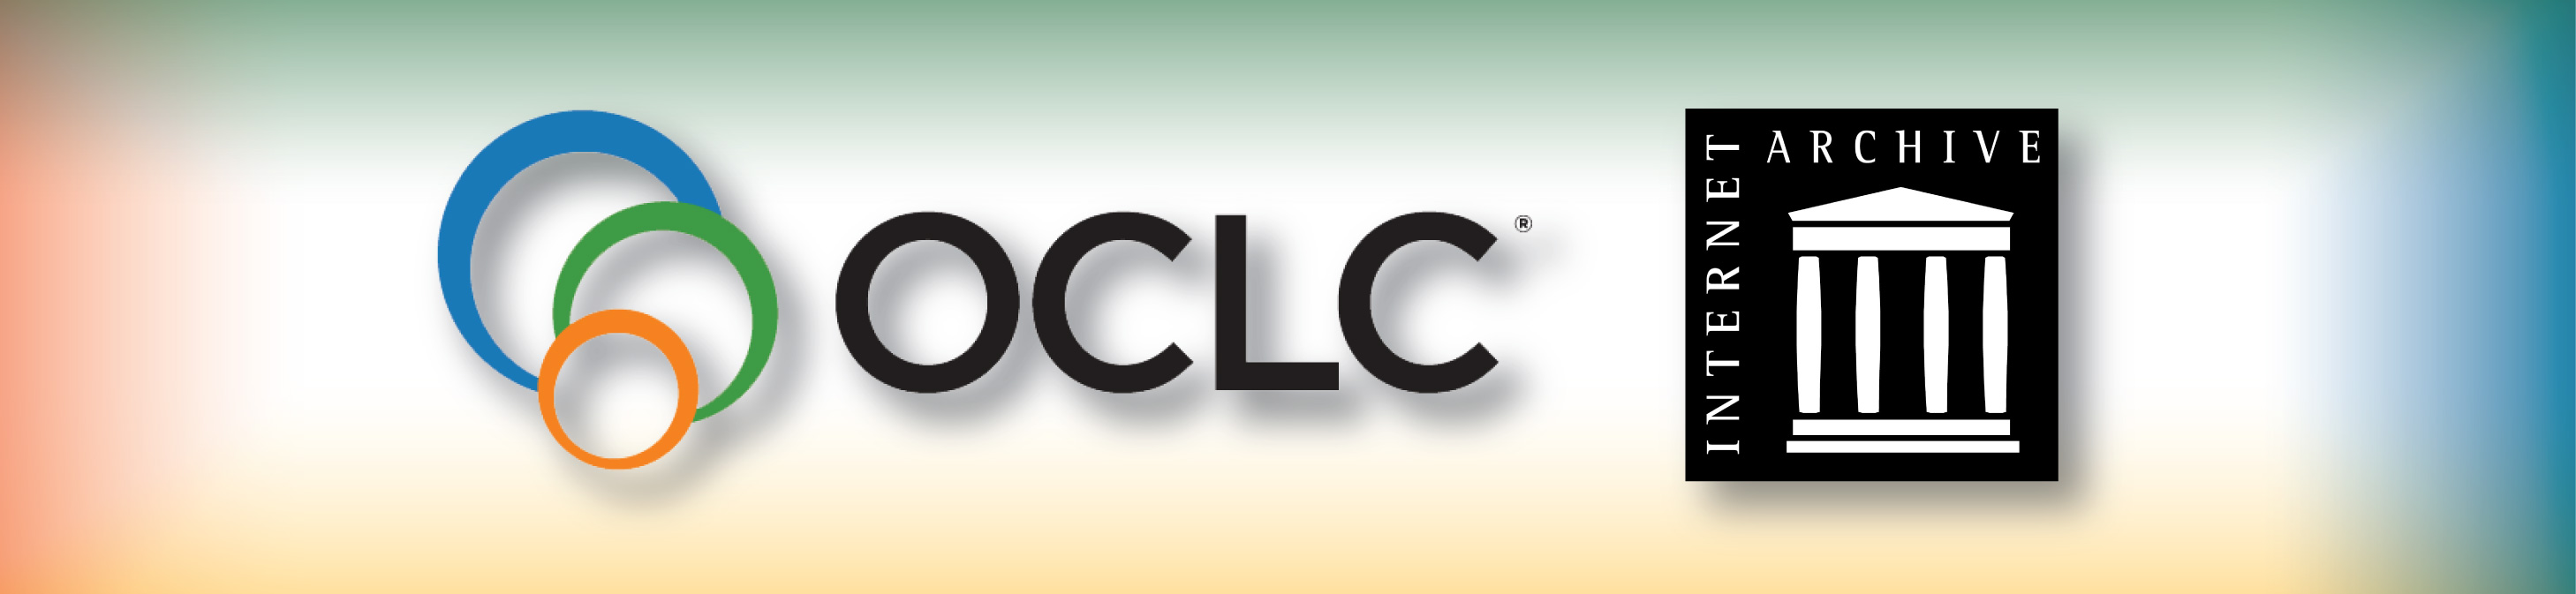 logouri OCLC și Internet Archive în aceeași imagine. Linkul din spate redirectează către articolul de unde a fost preulată informația